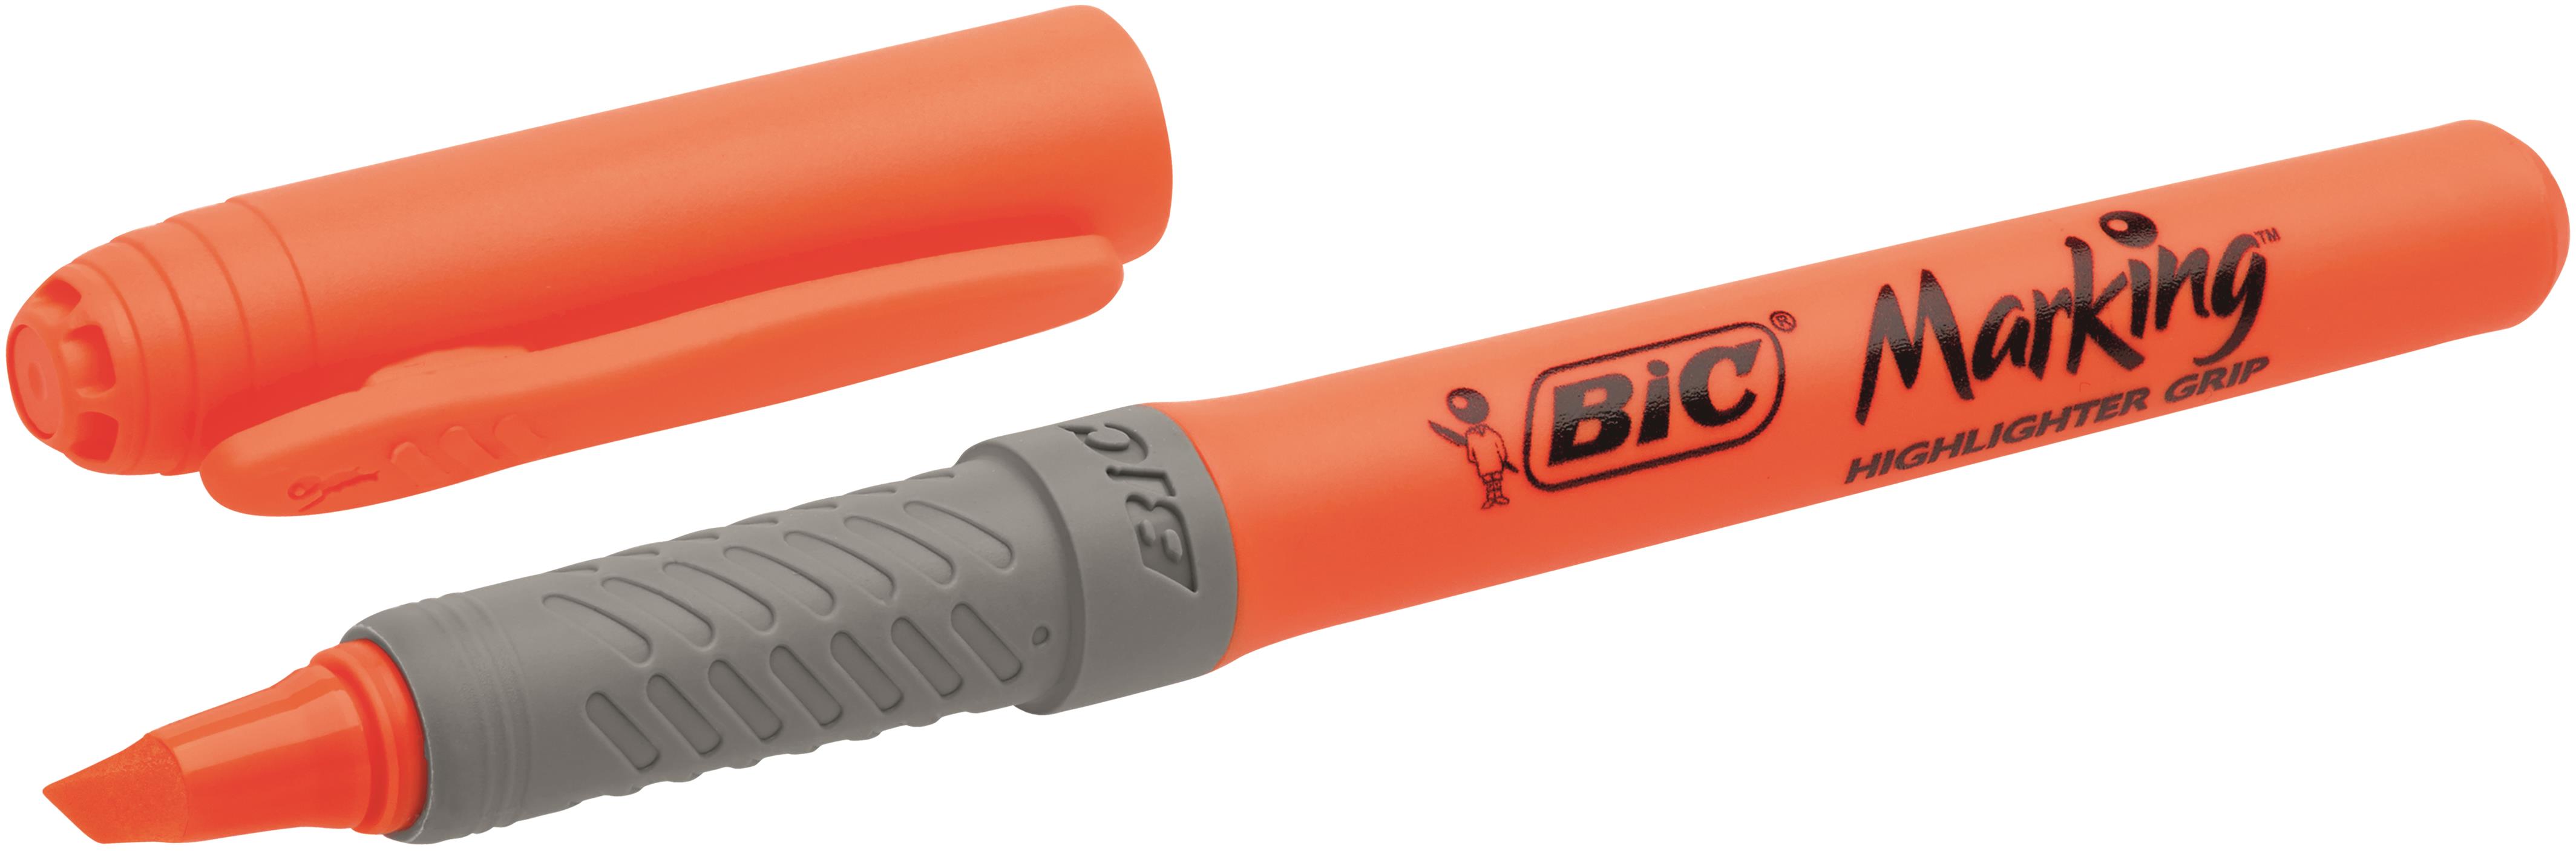 Bic Grip Highlighter Pen Chisel Tip 1.6-3.3mm Line Orange (Pack 12)